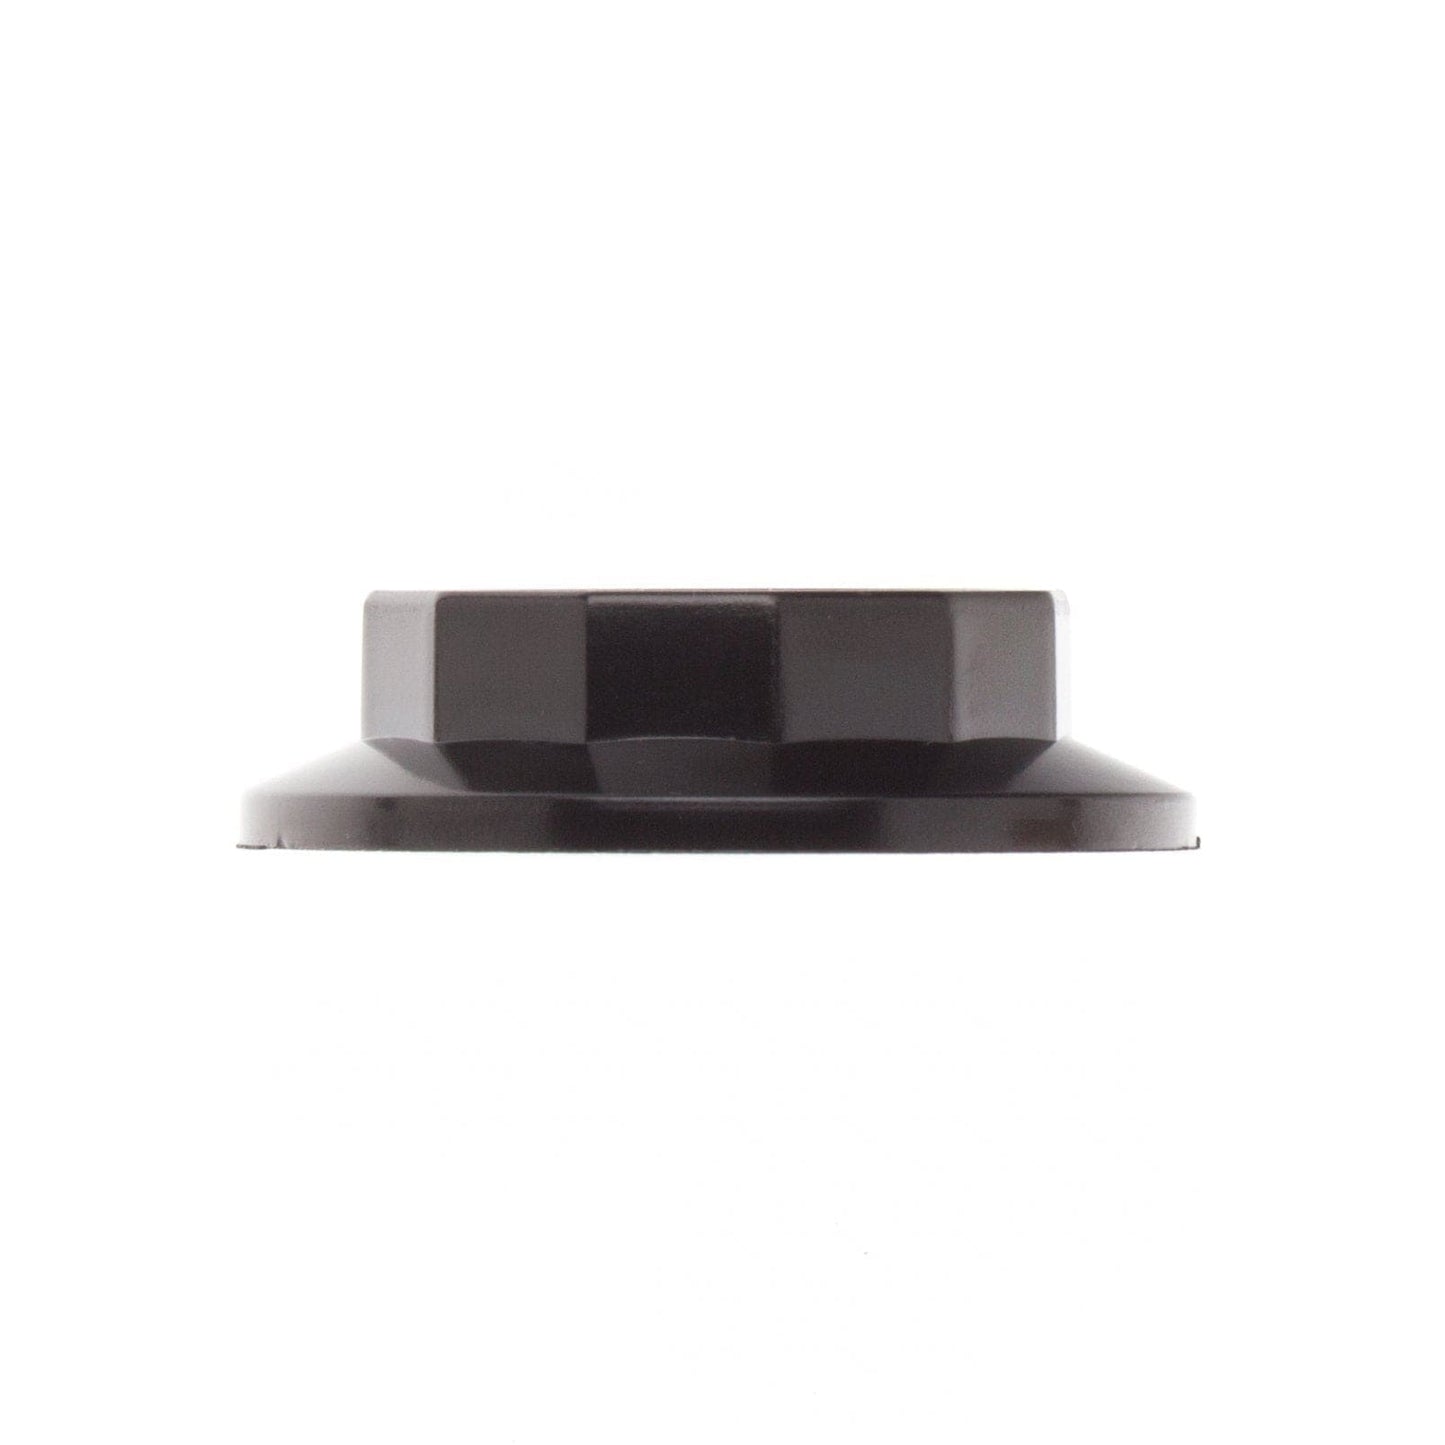 E12 Extra Shade Ready Socket Ring - Black